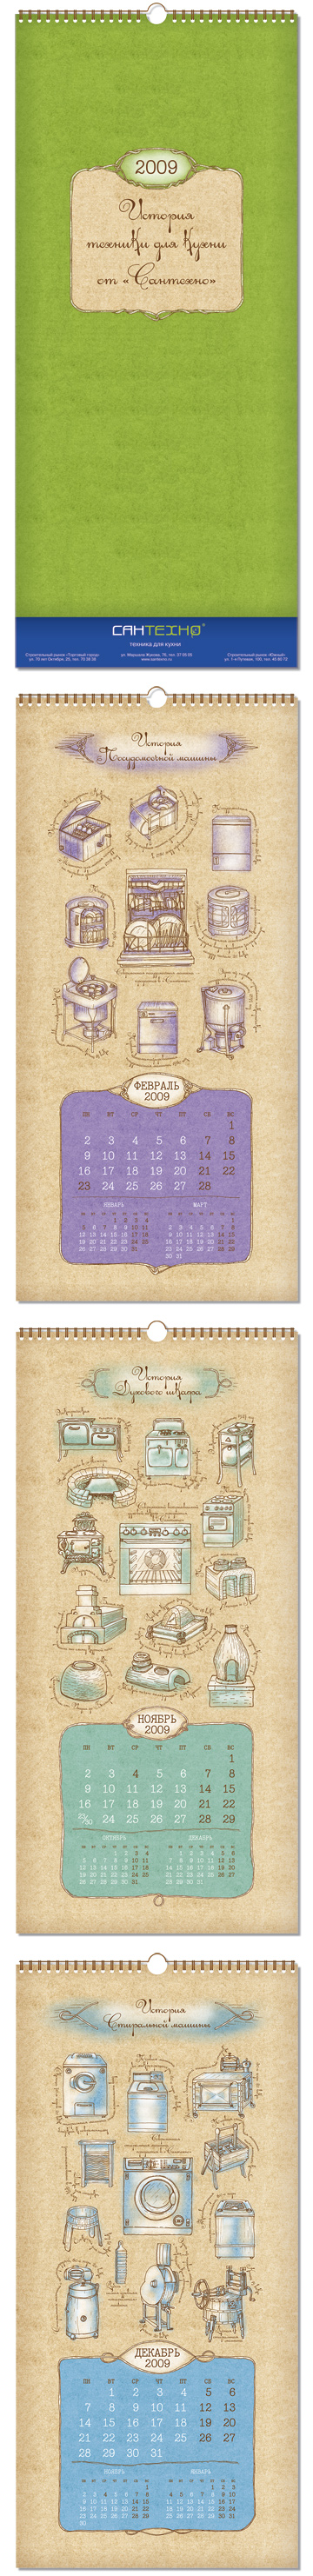 дизайн настенного календаря